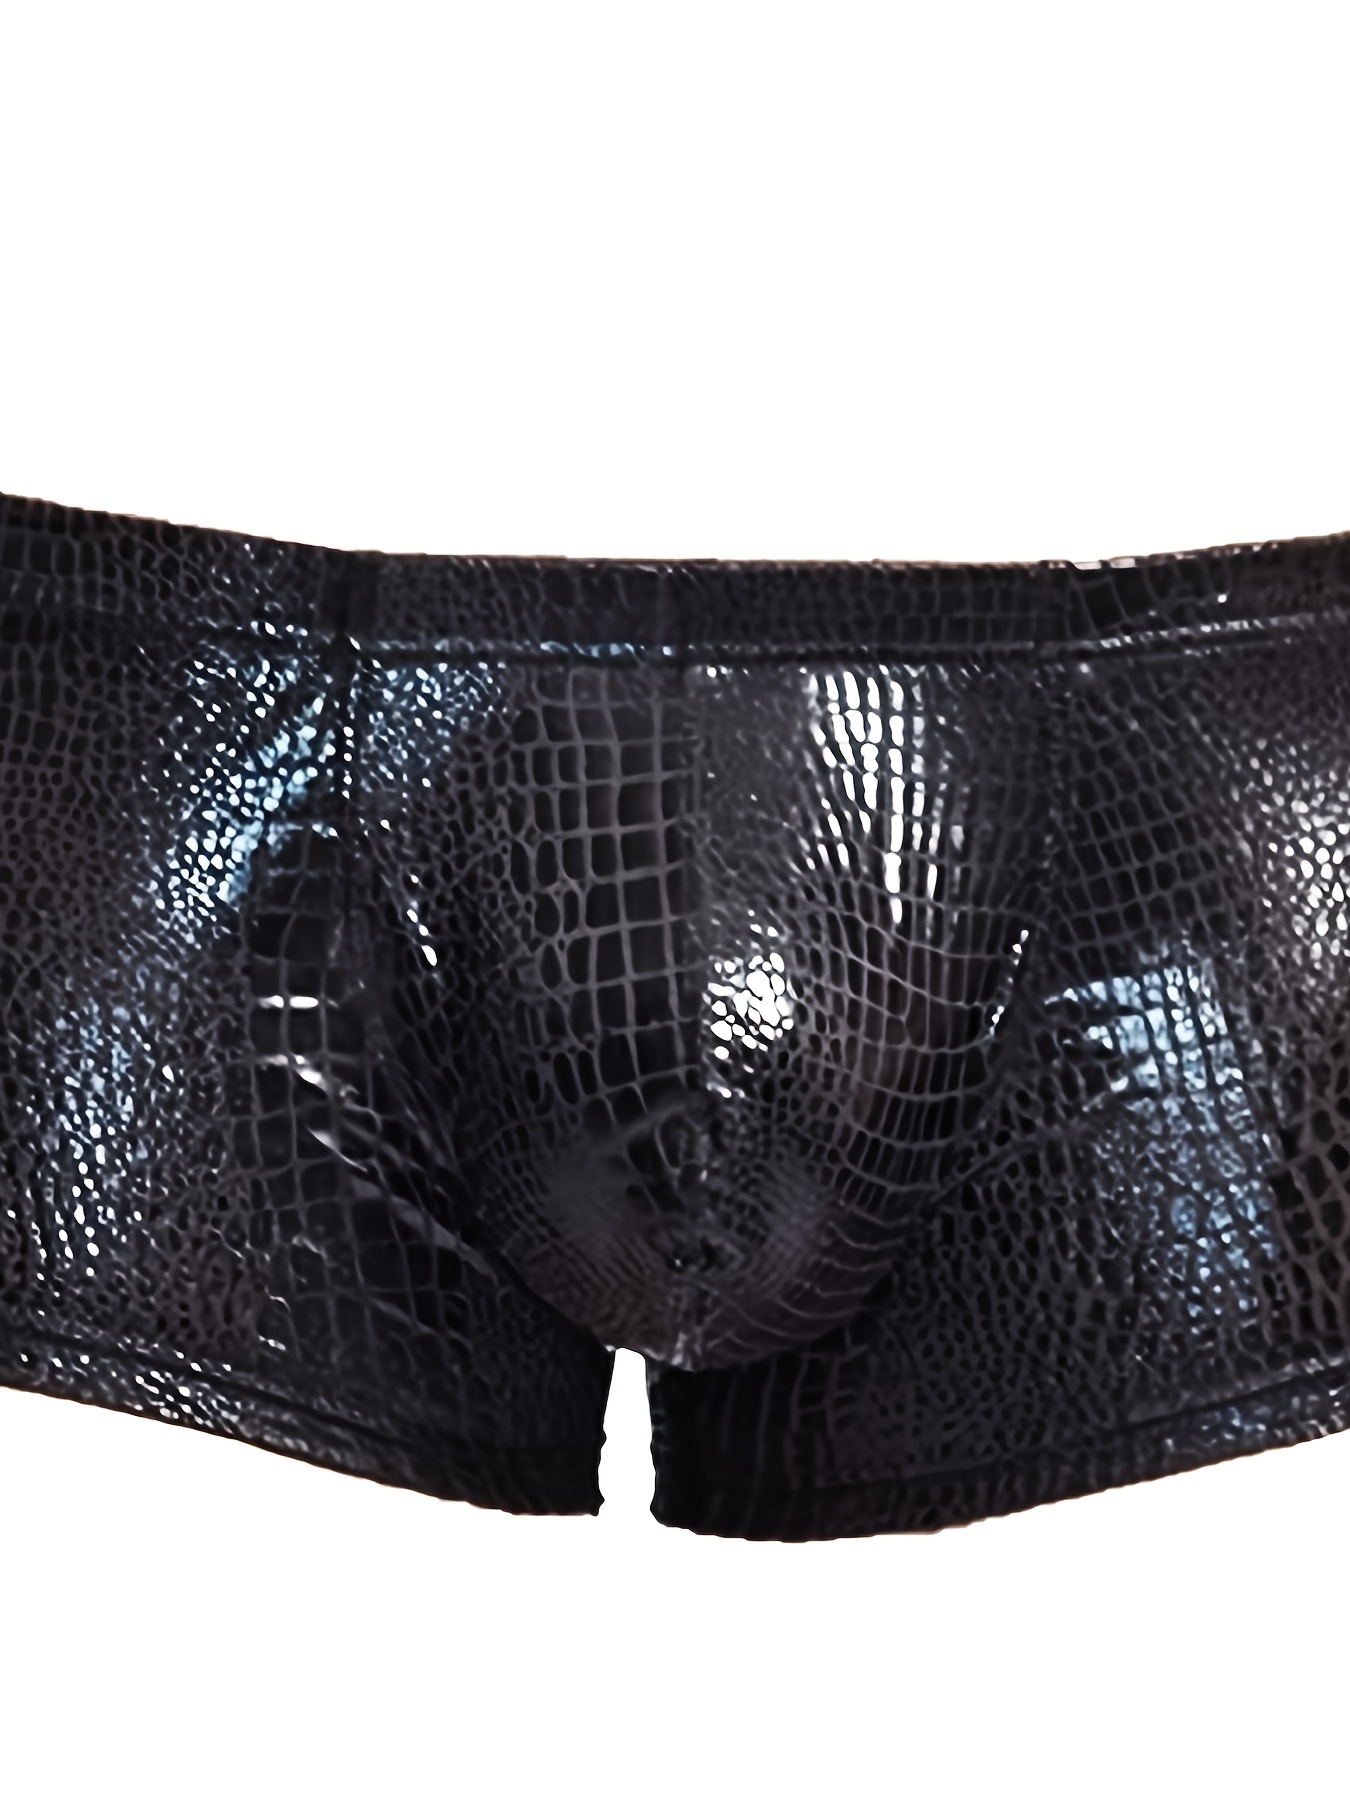 Custom Black Crocodile Skin Leather Underwear Men Breathbale